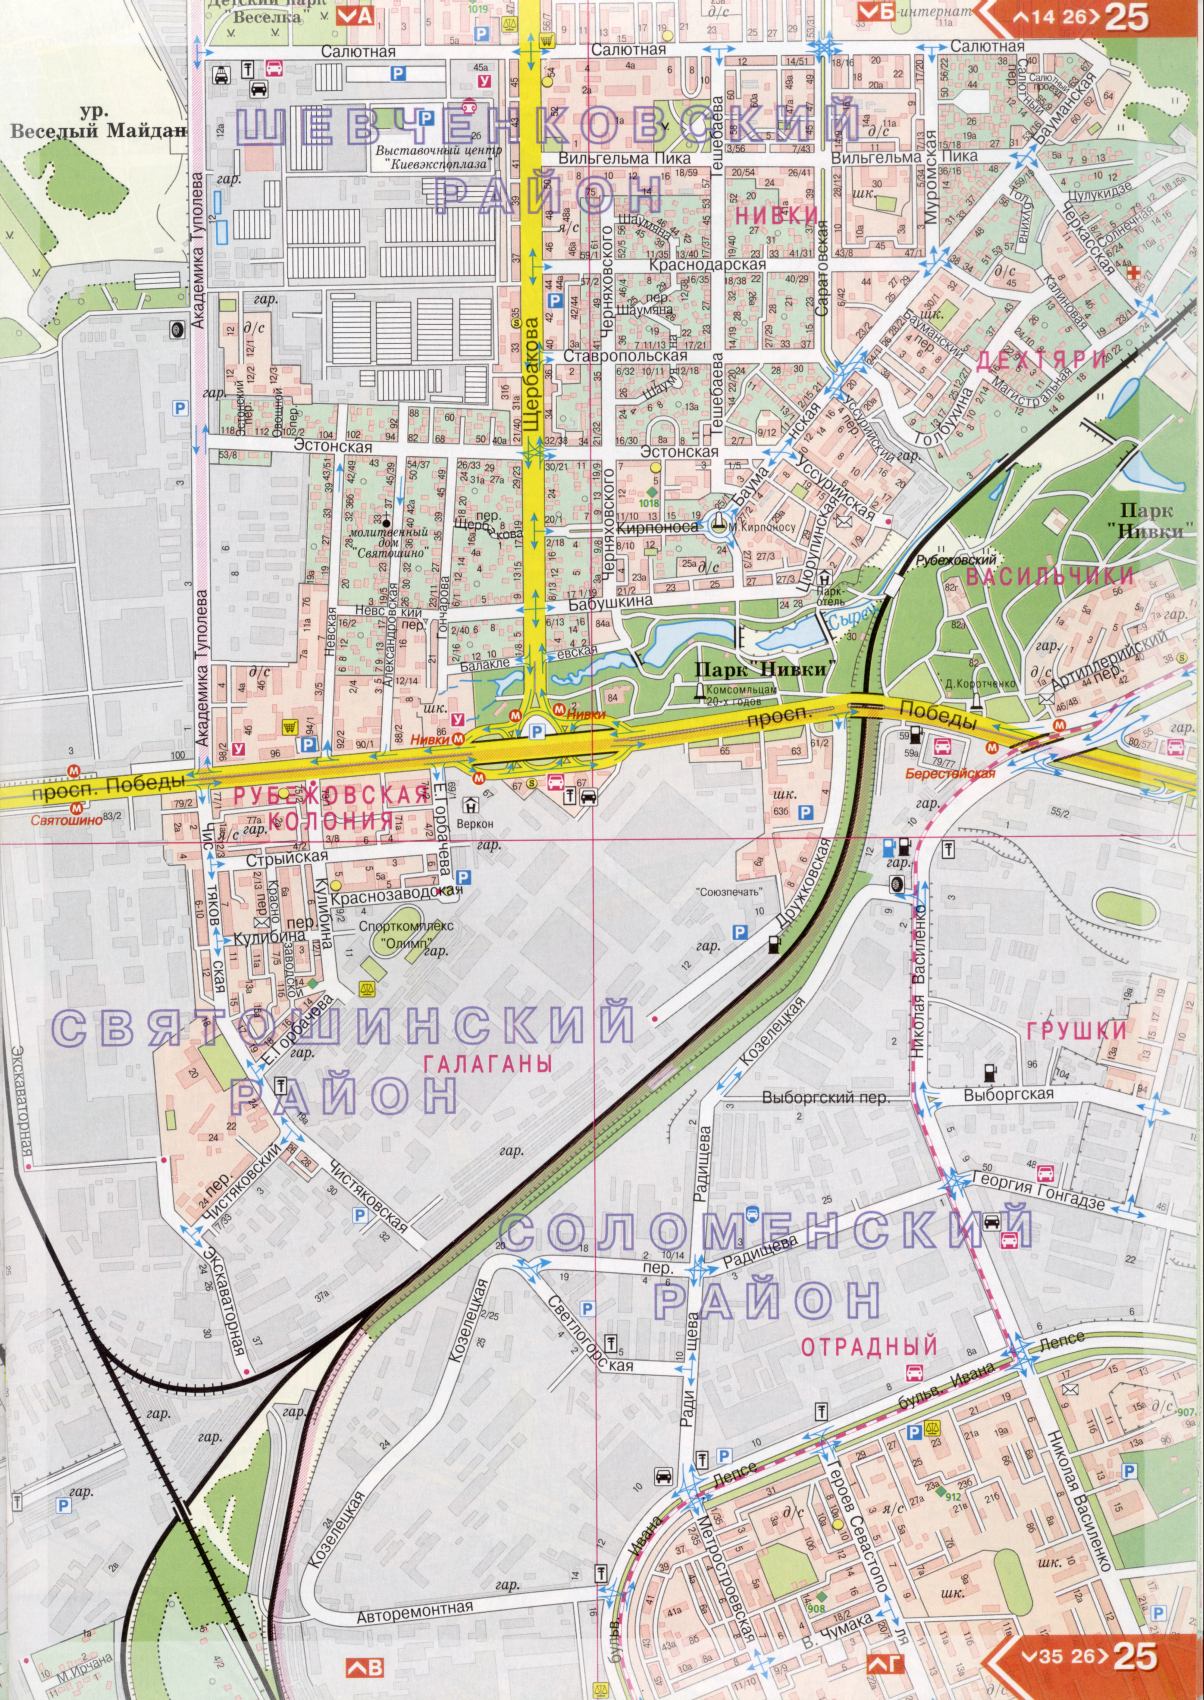 Kiew Karte Details 1cm = 150m für 45 Blatt. Karte von Kiew aus dem Atlas von Autobahnen. Laden Sie eine detaillierte Karte, B2 - Solomenskiy Kreis Kiew